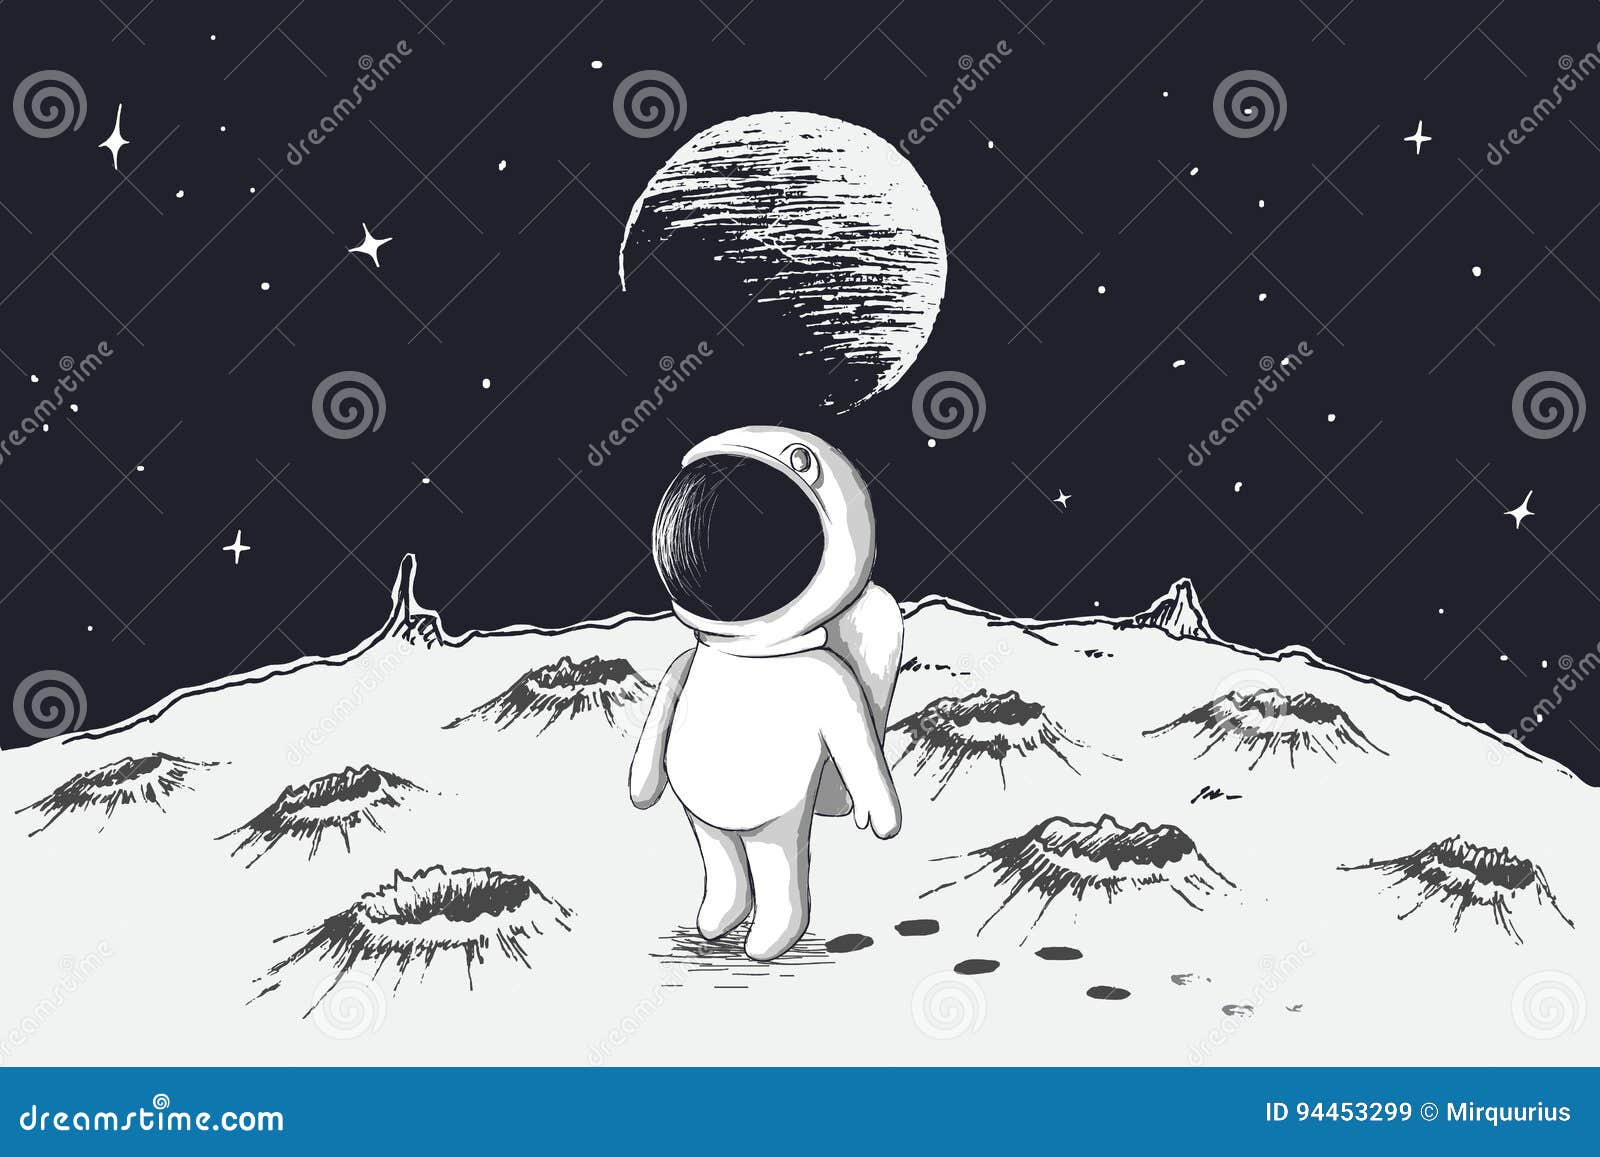 Песня там на луне. Космос рисунок карандашом. Человечек на Луне. Луна рисунок. Космонавт на Луне рисунок.